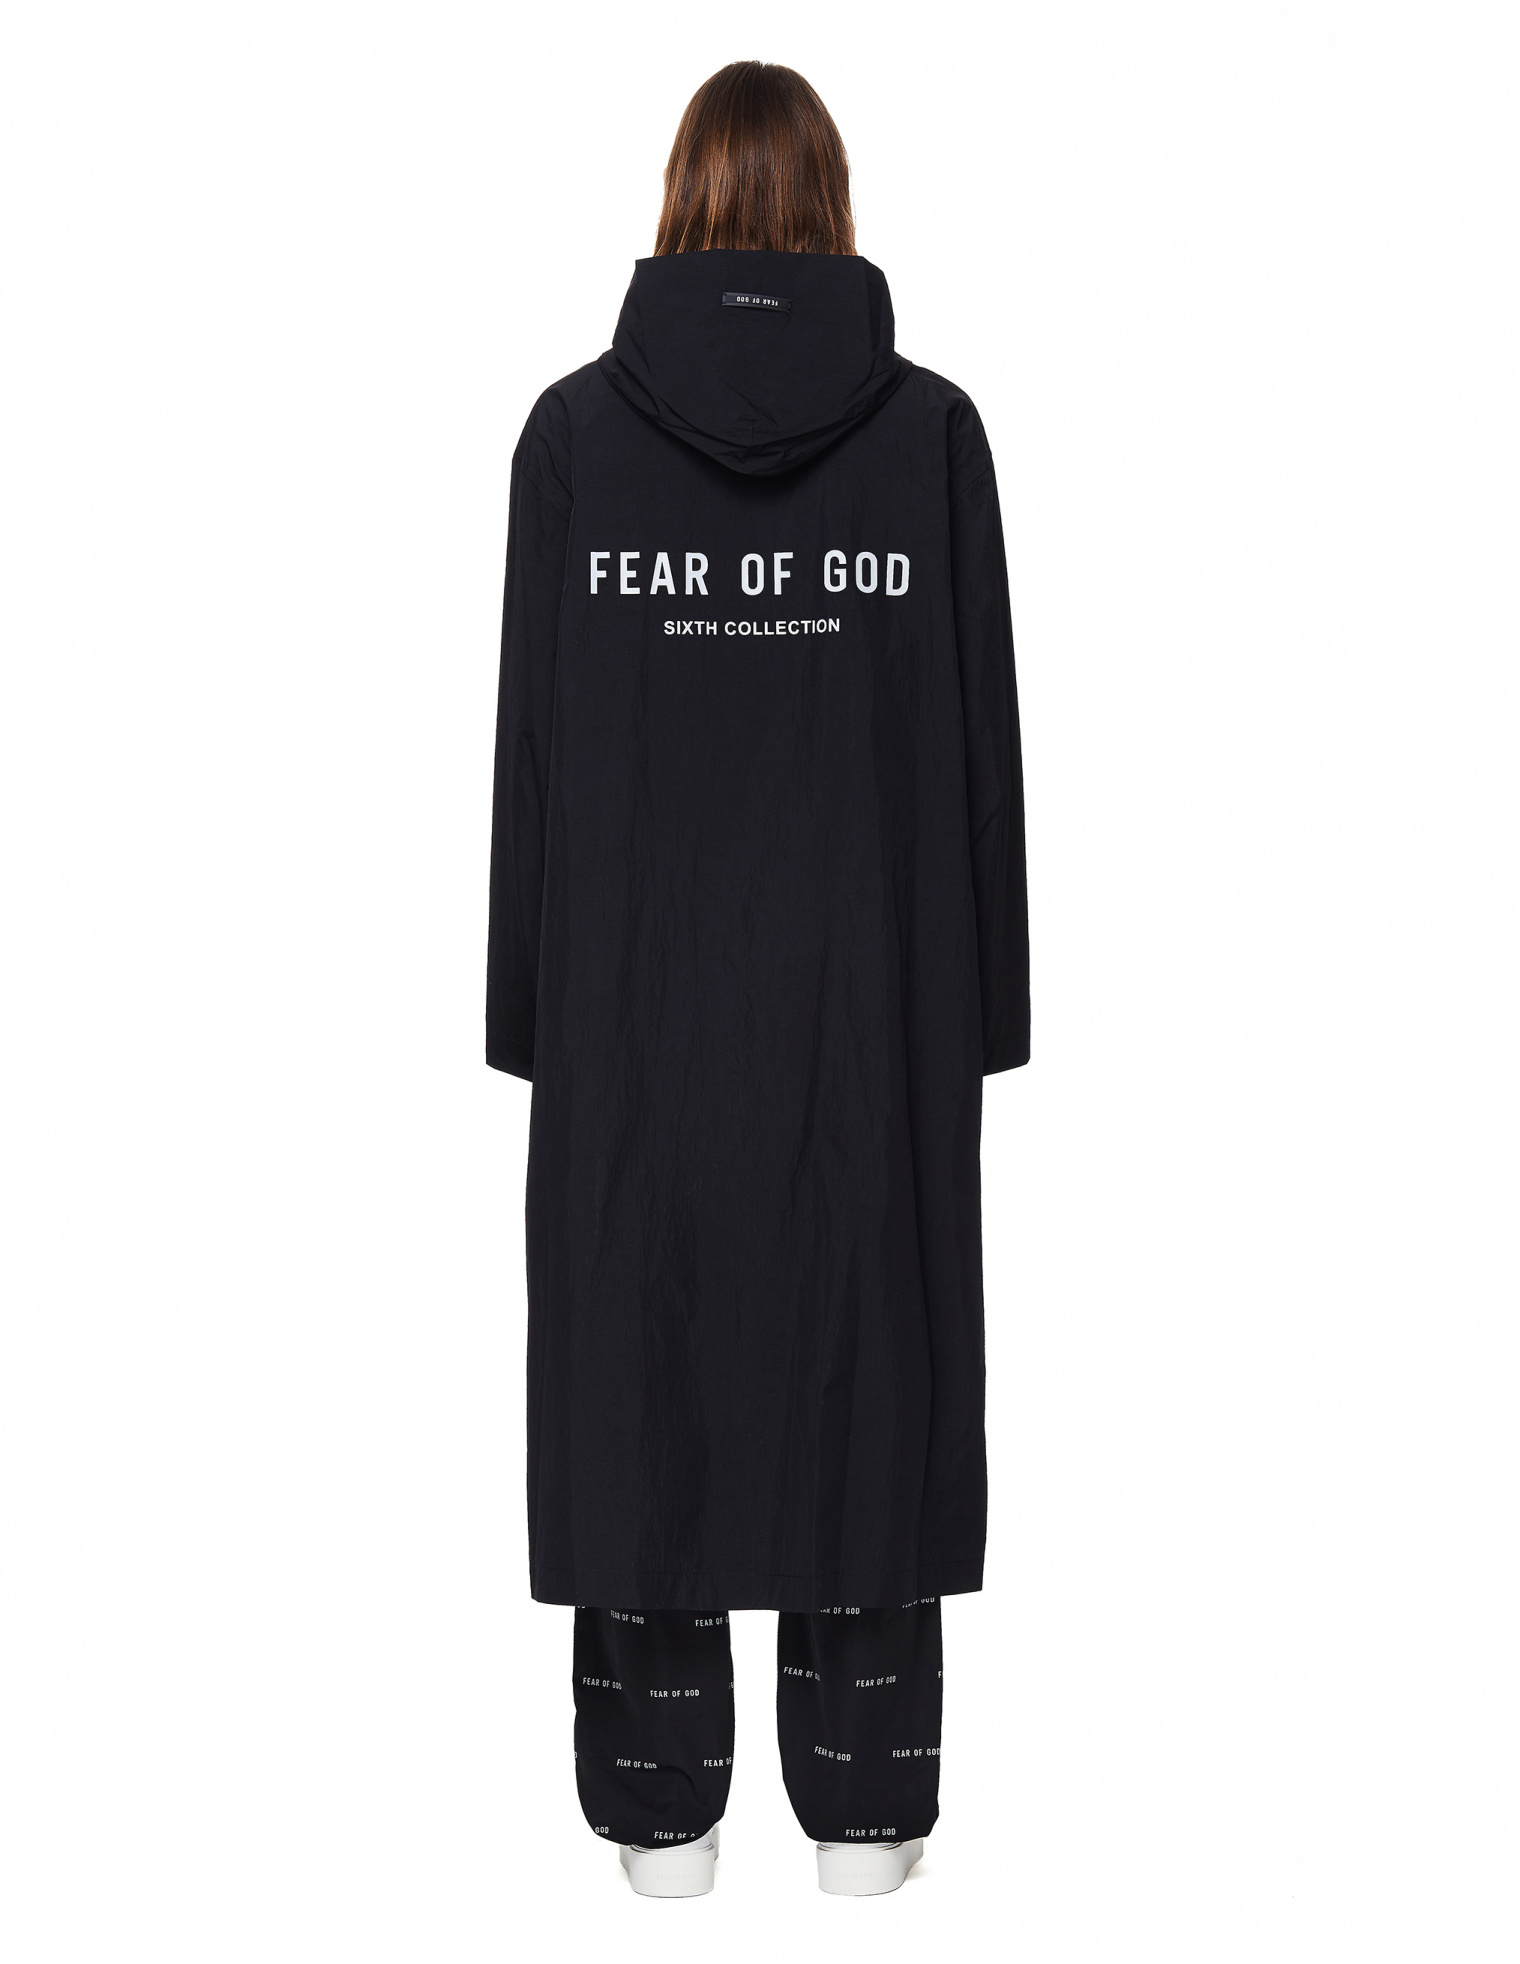 Buy Fear of God men black nylon hooded reflective logo raincoat for $648  online on SV77